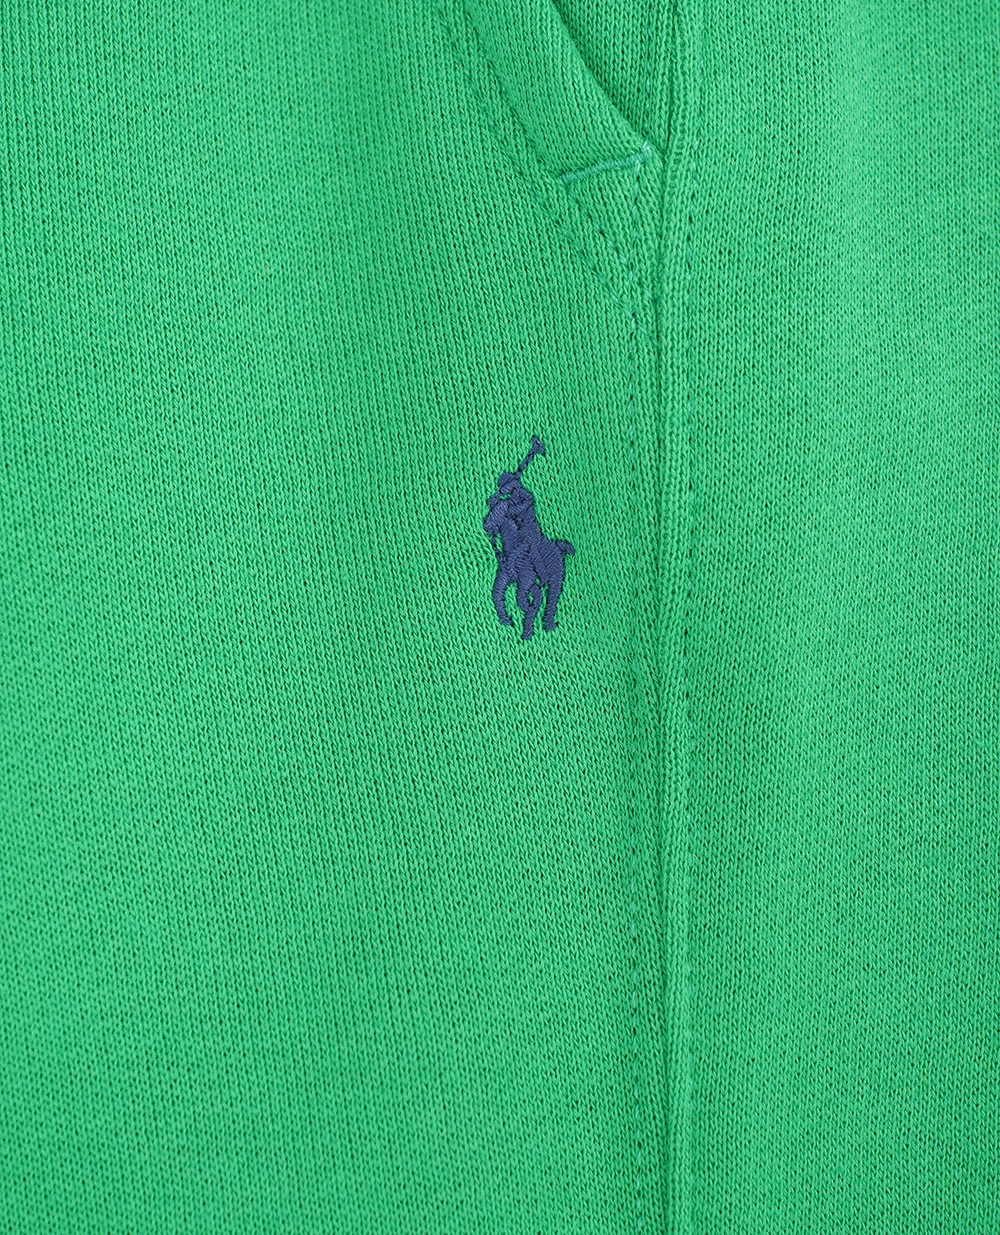 Детские спортивные брюки (костюм) Polo Ralph Lauren Kids 322799362031, зеленый цвет • Купить в интернет-магазине Kameron